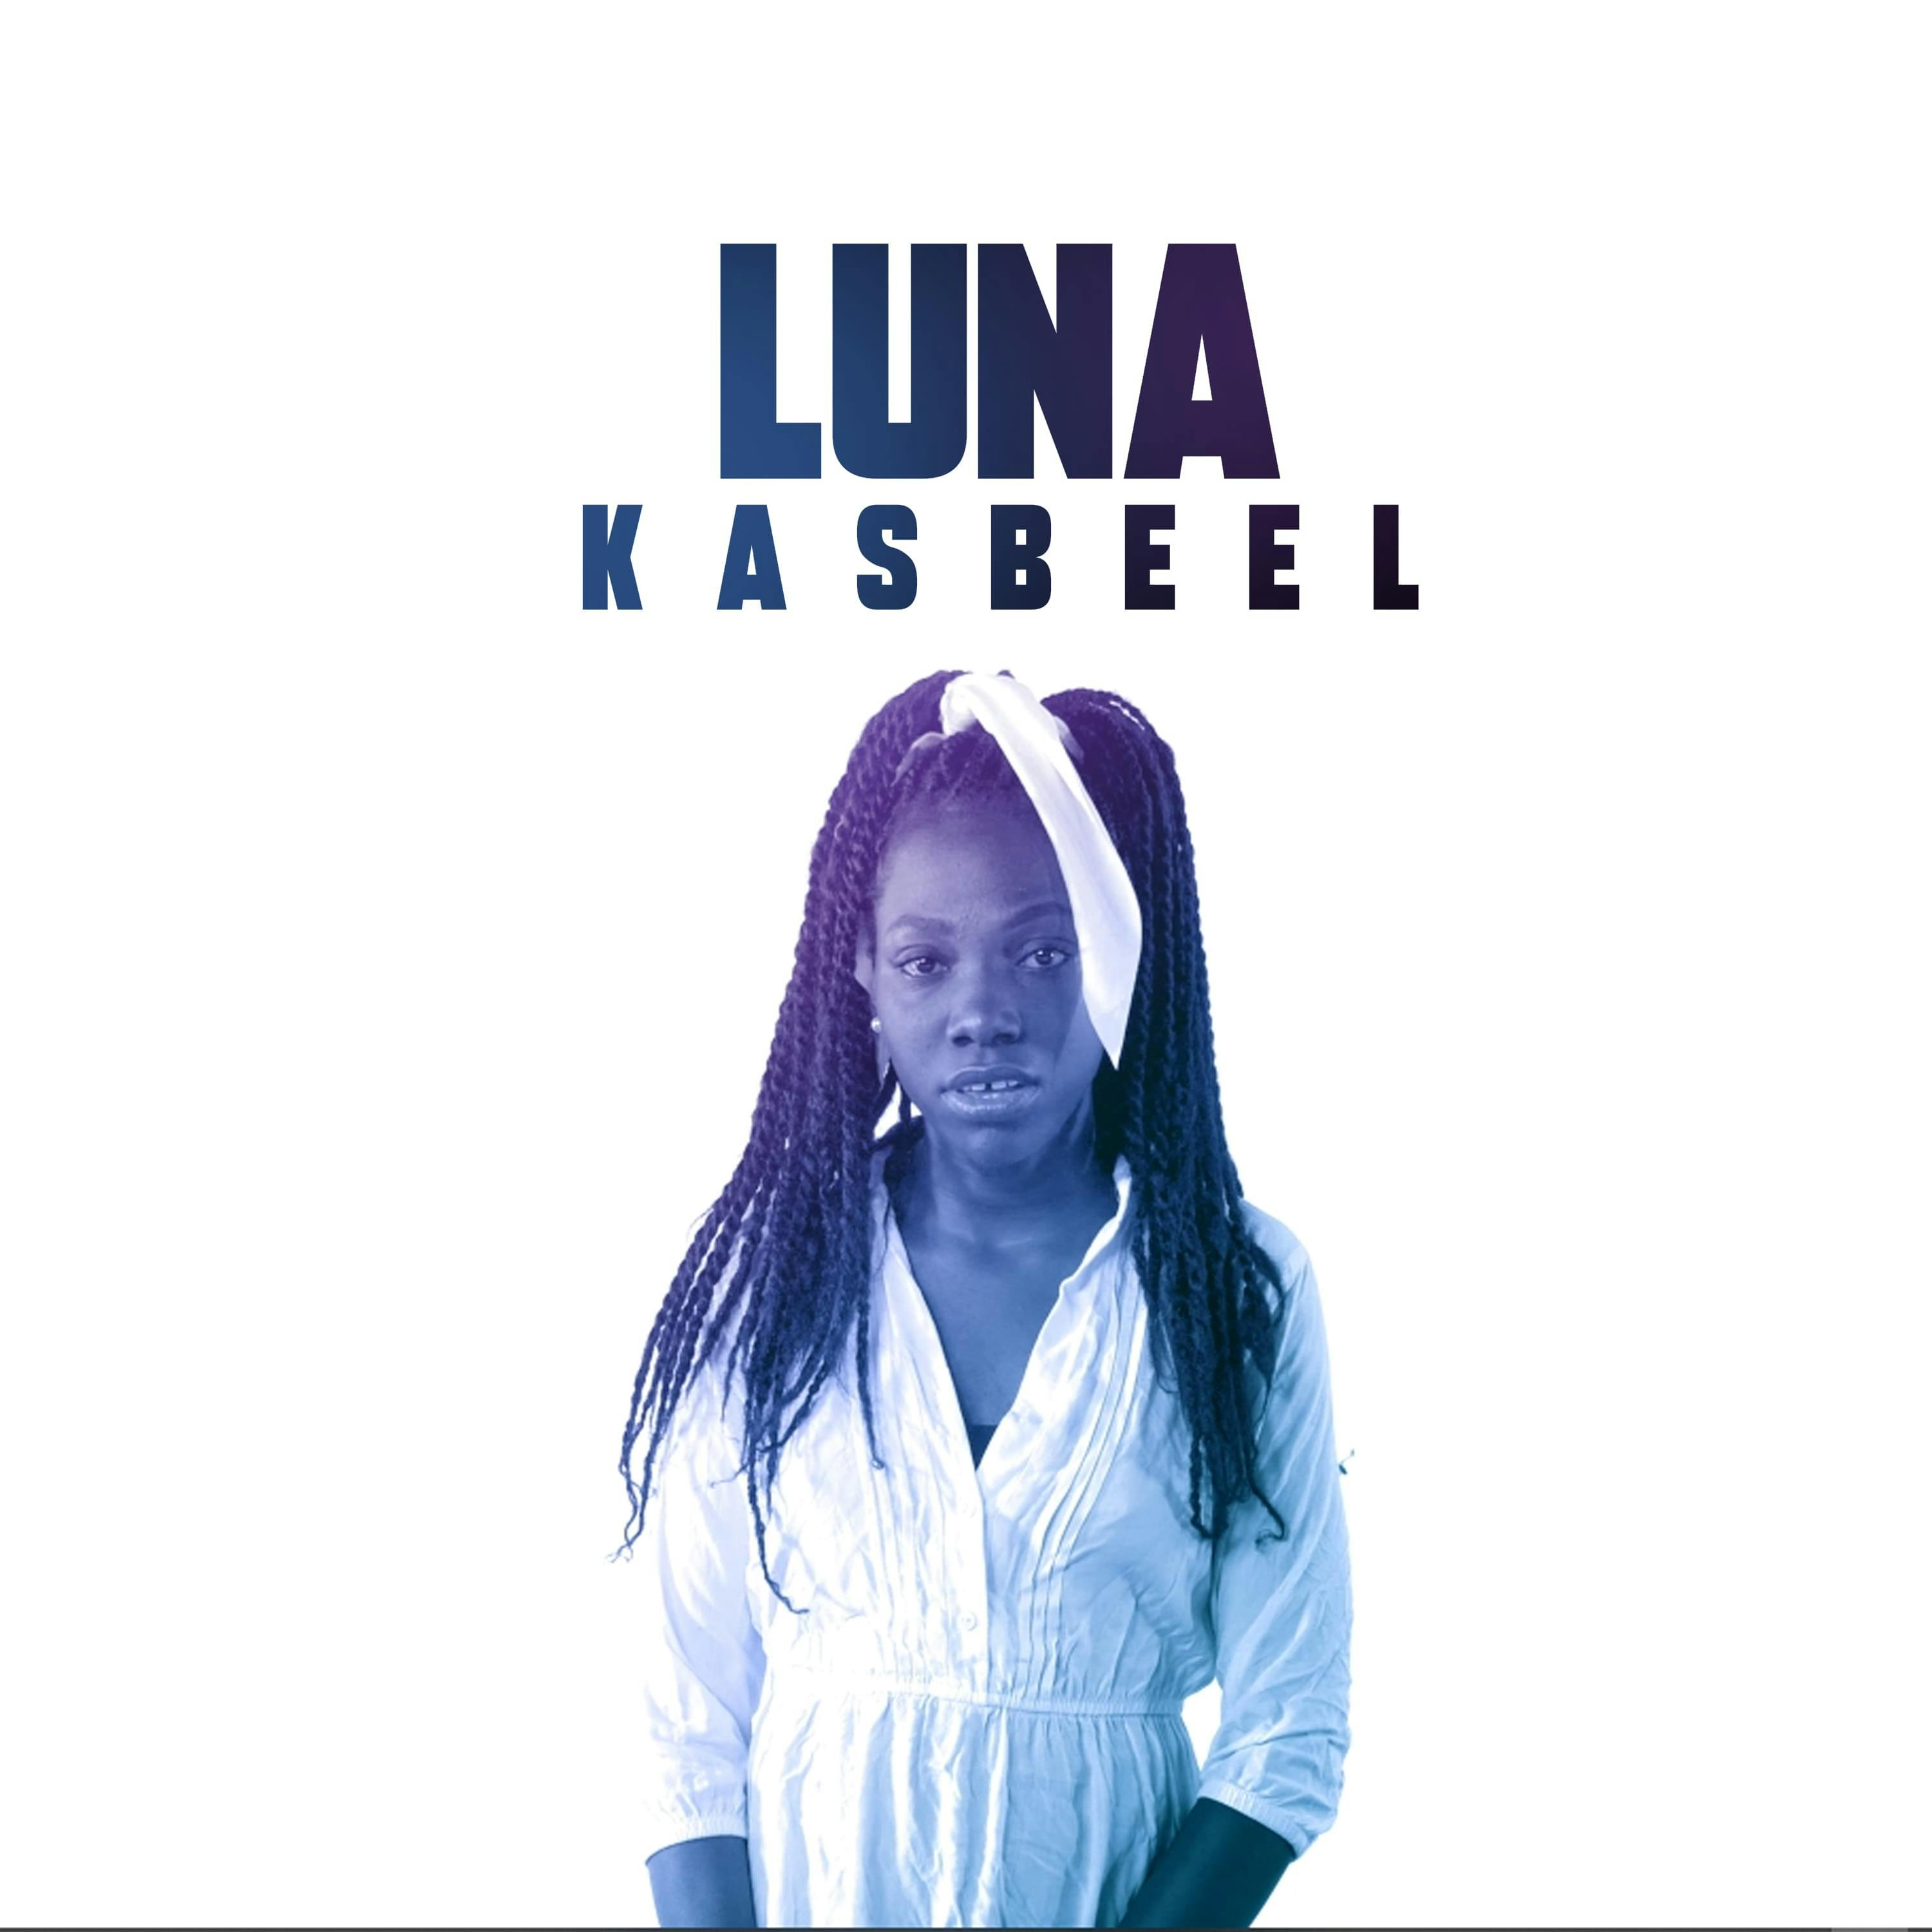 Cover art for Kasbeel's song: LUNA